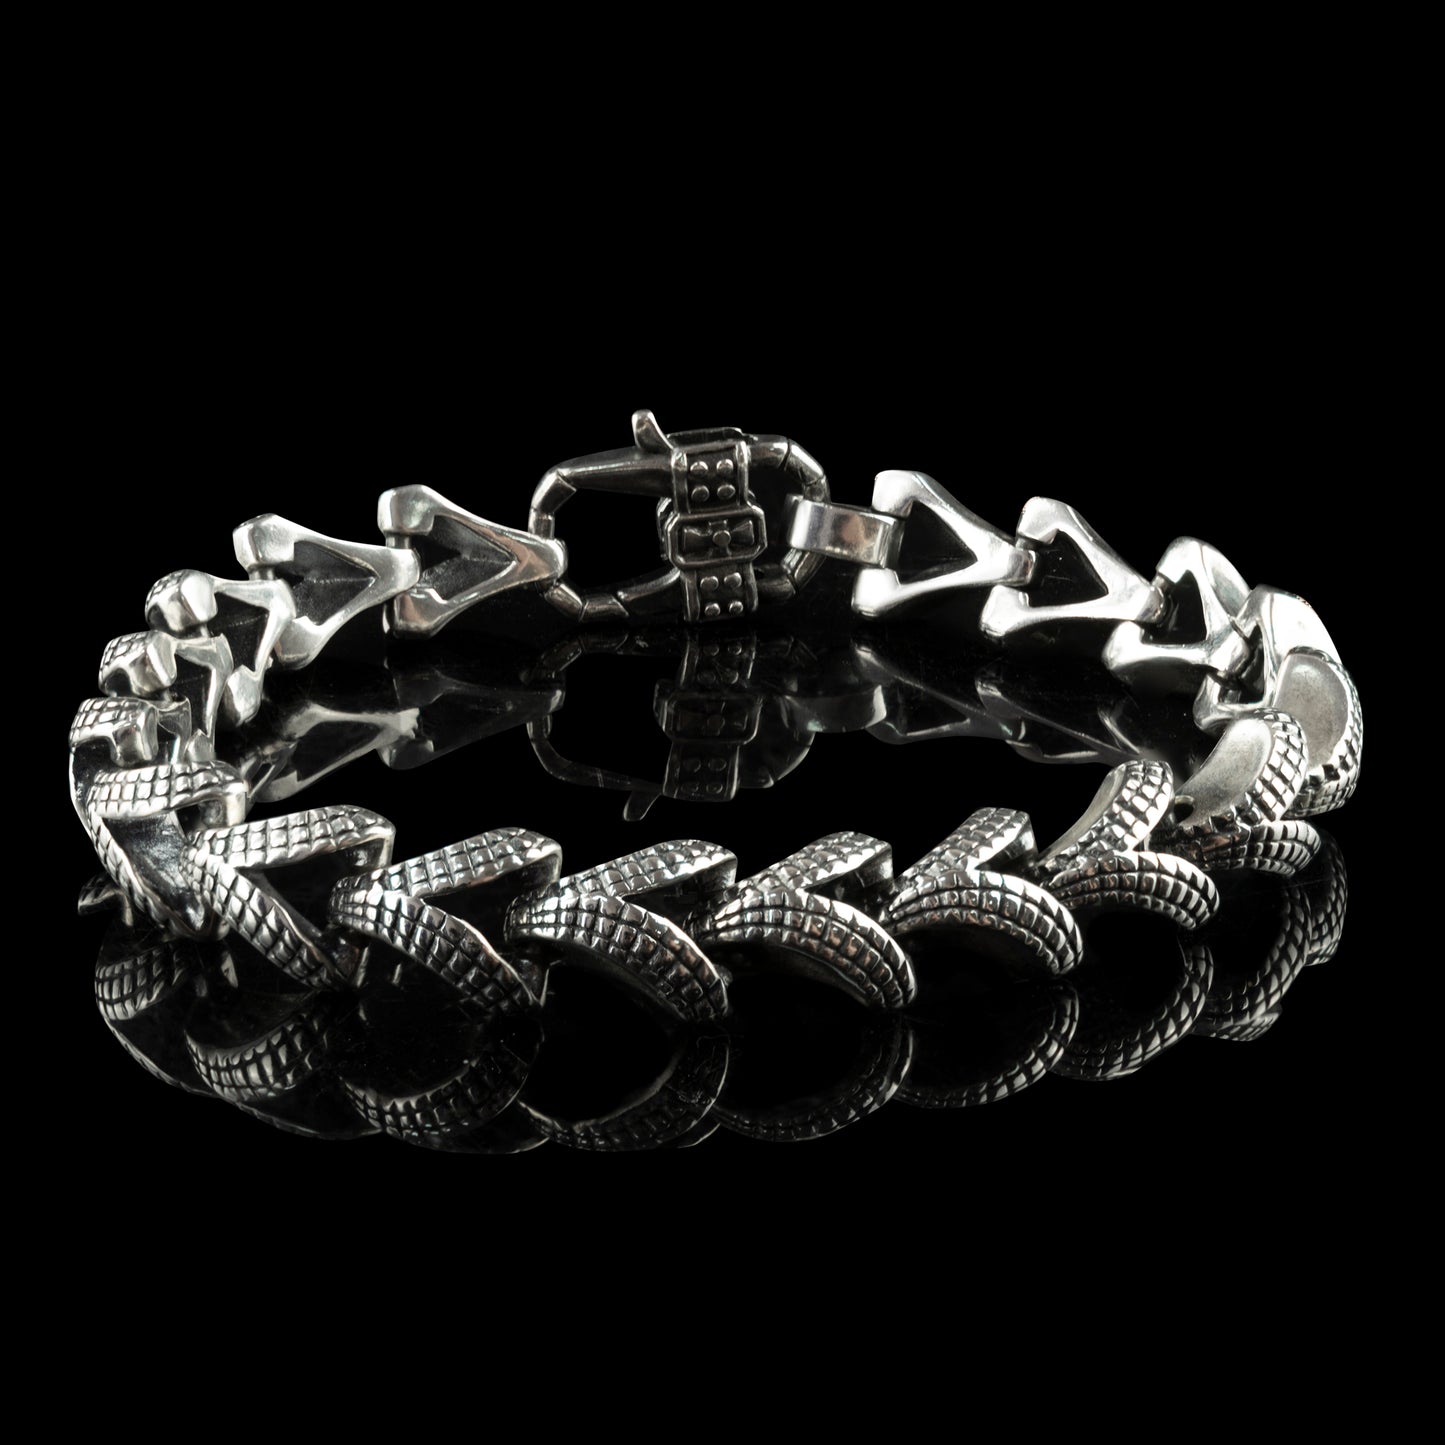 Bruralist silver chain bracelet Biker jewelry Biker bracelet